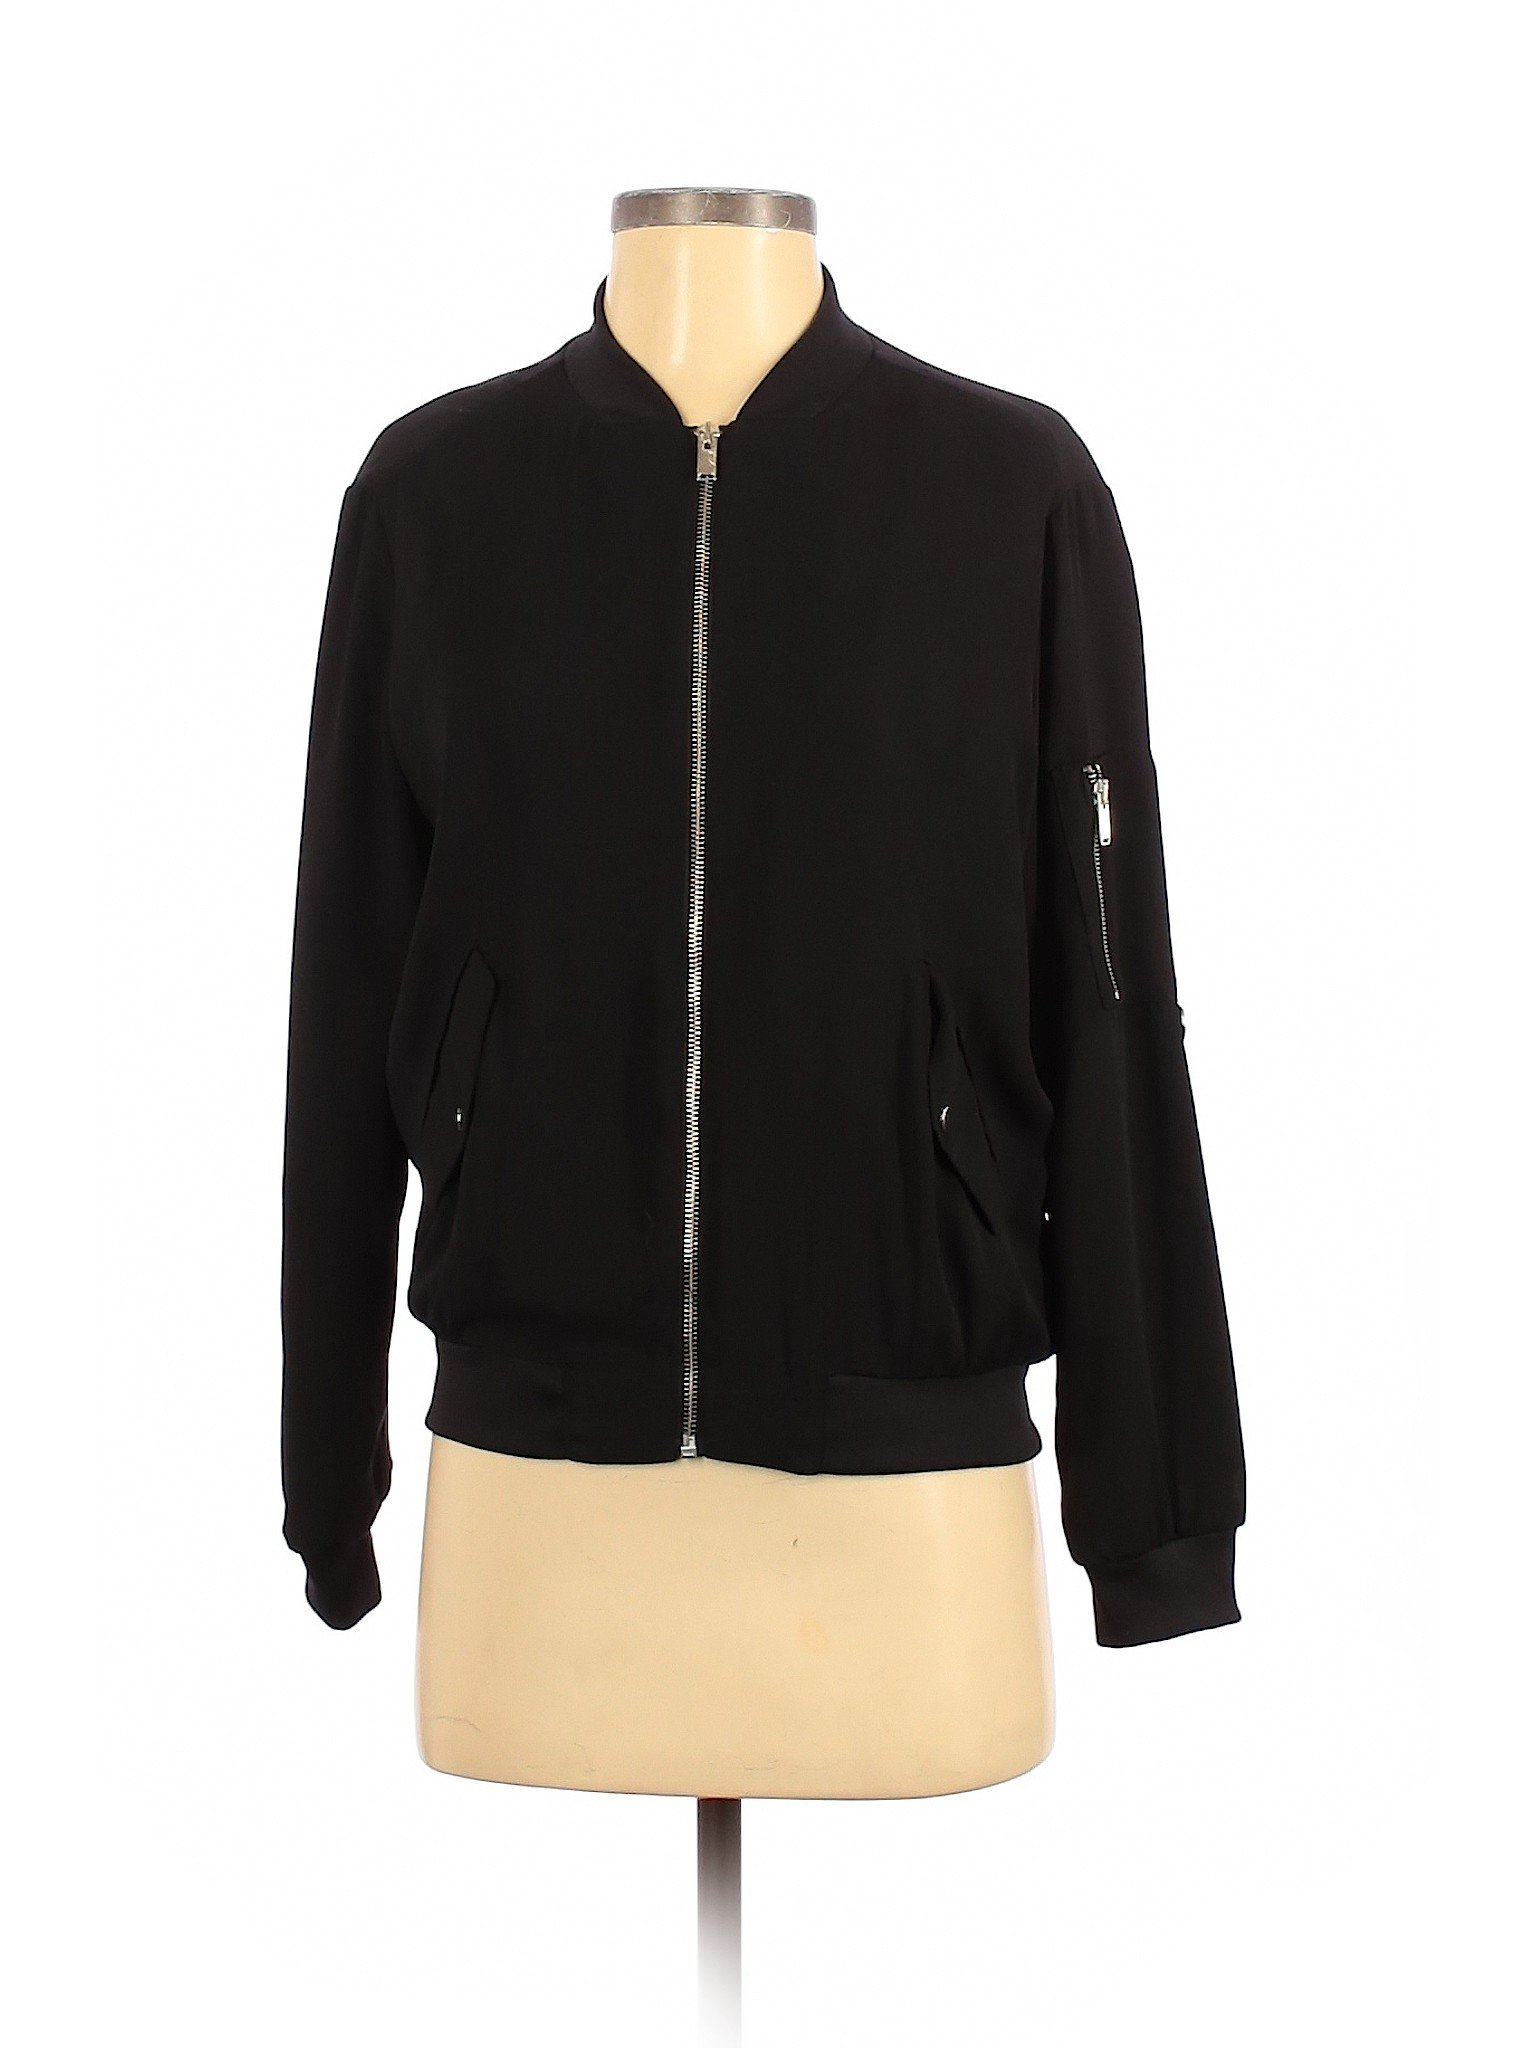 Zara Basic Women Black Jacket XS | eBay